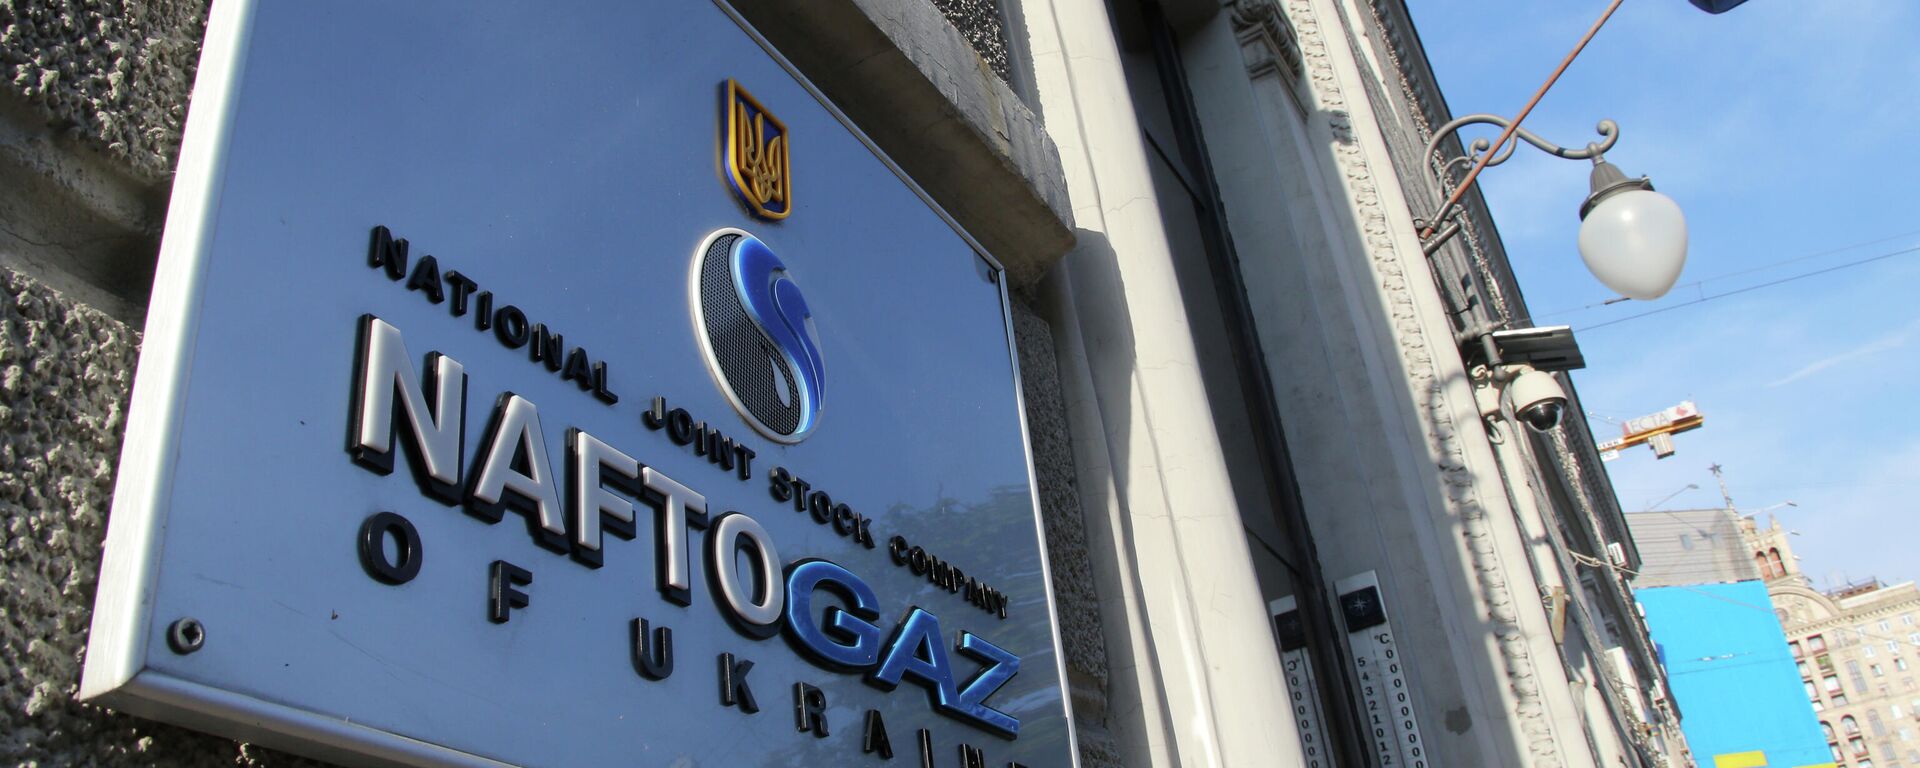 Вывеска нефтегазового холдинга Нафтогаз Украины на административном здании в Киеве - Sputnik Узбекистан, 1920, 25.04.2021